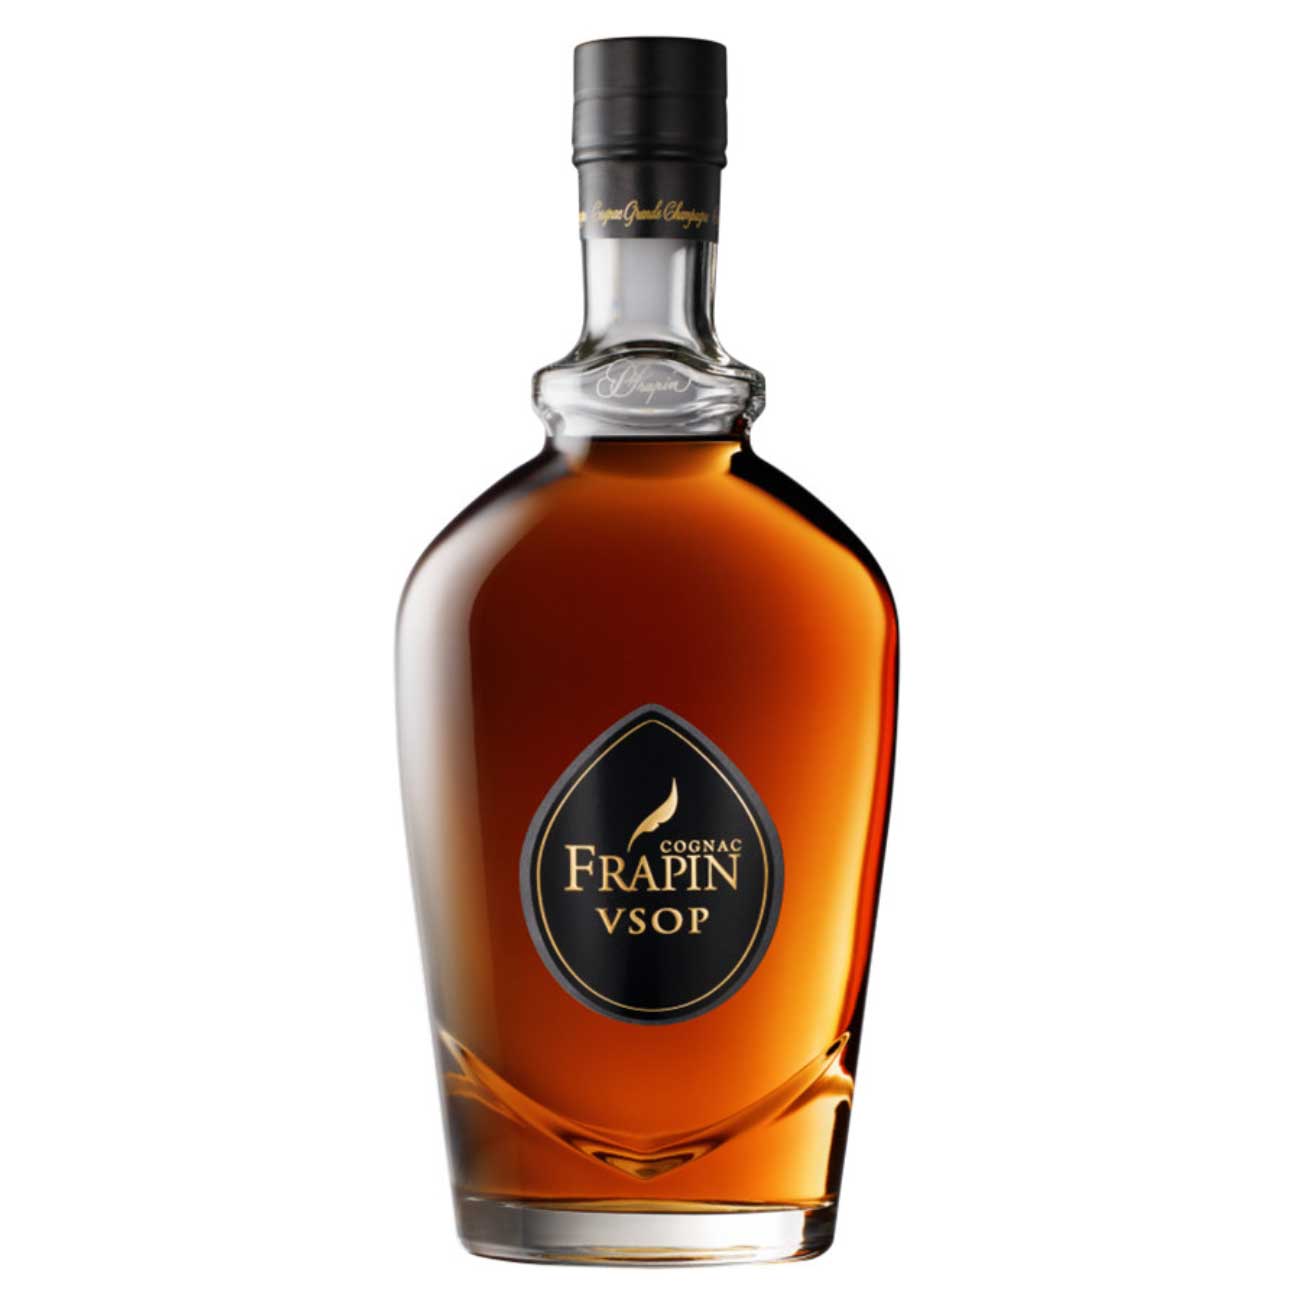 Cognac Frapin VSOP 40% vol. 0,70l in Geschenkverpackung